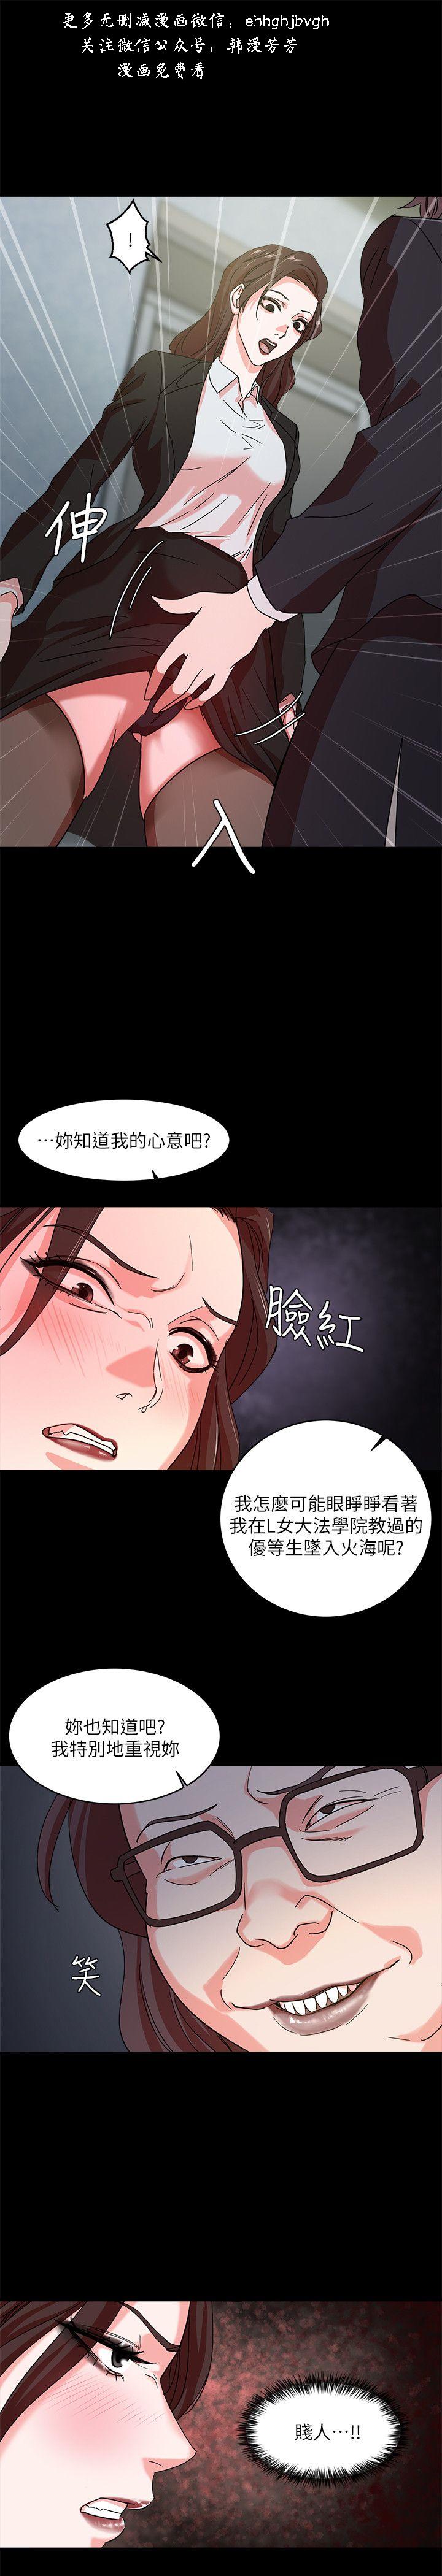 母豬養成計畫【中文】 page 42 full